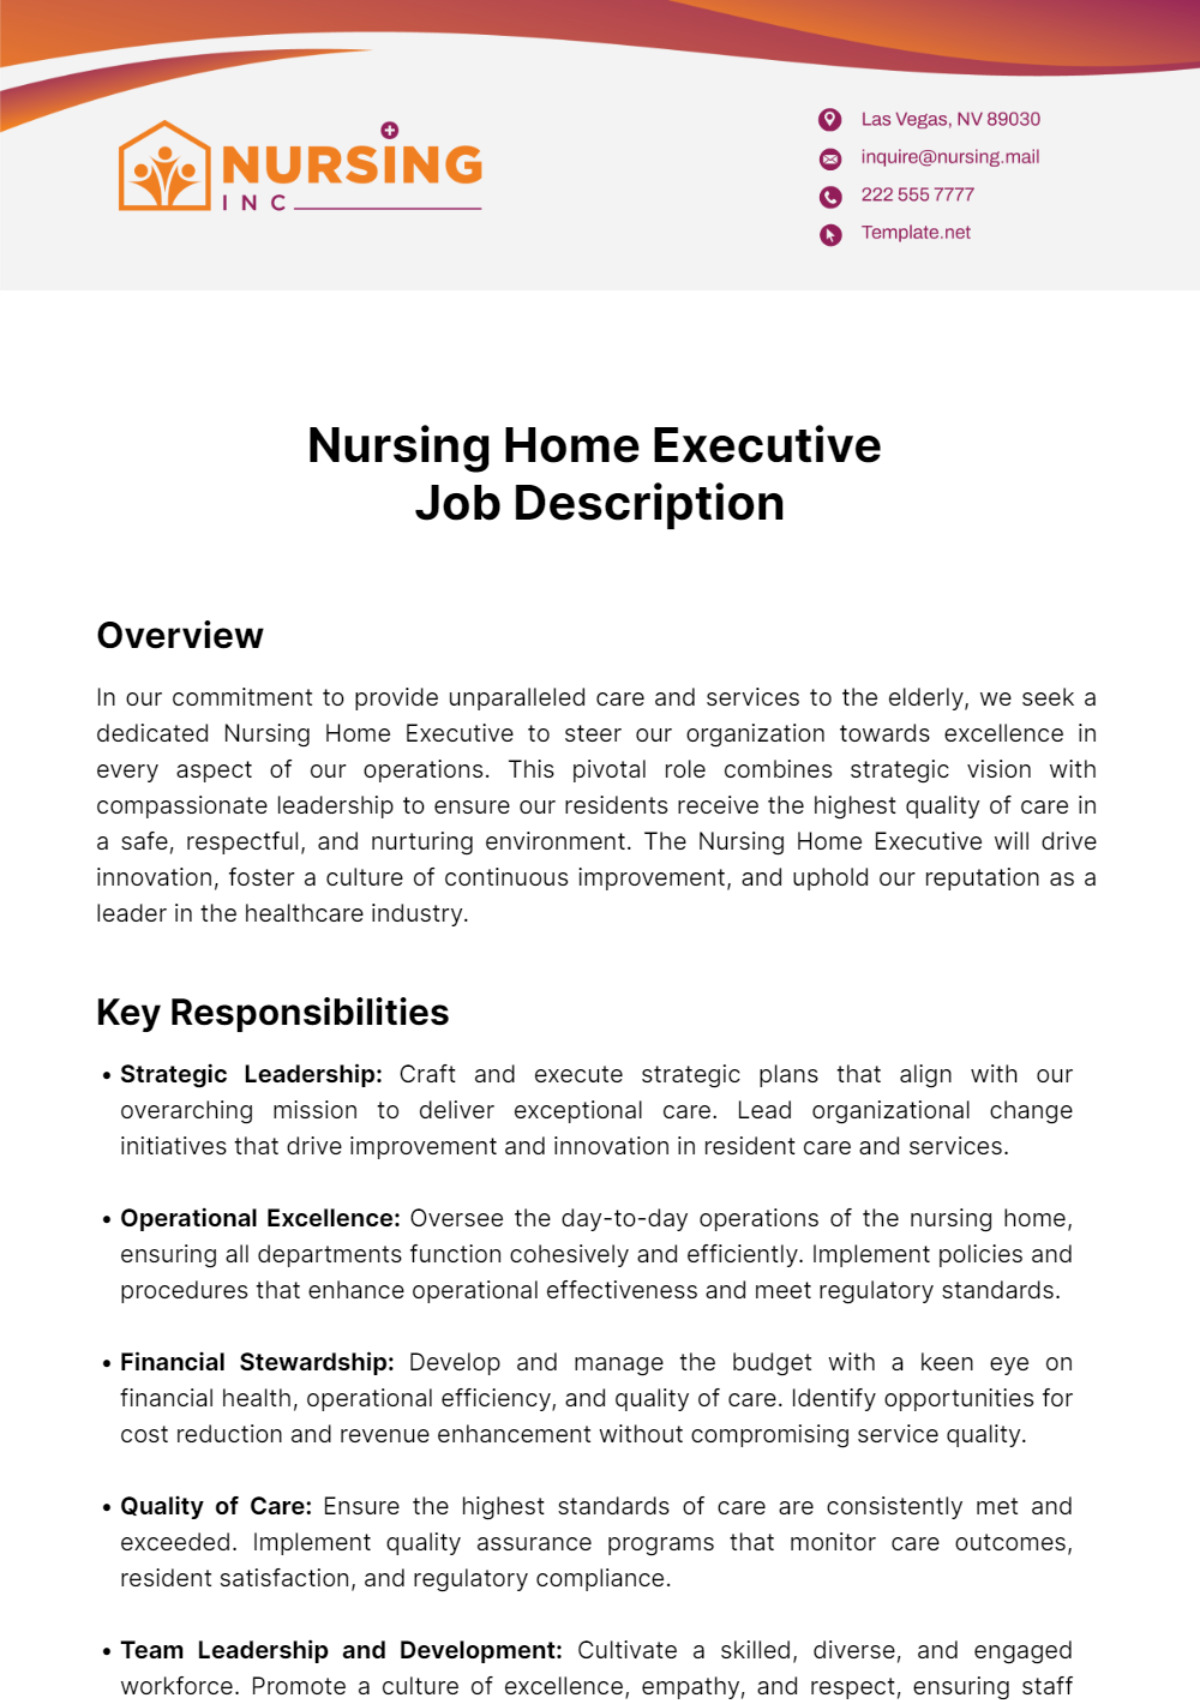 Nursing Home Executive Job Description Template